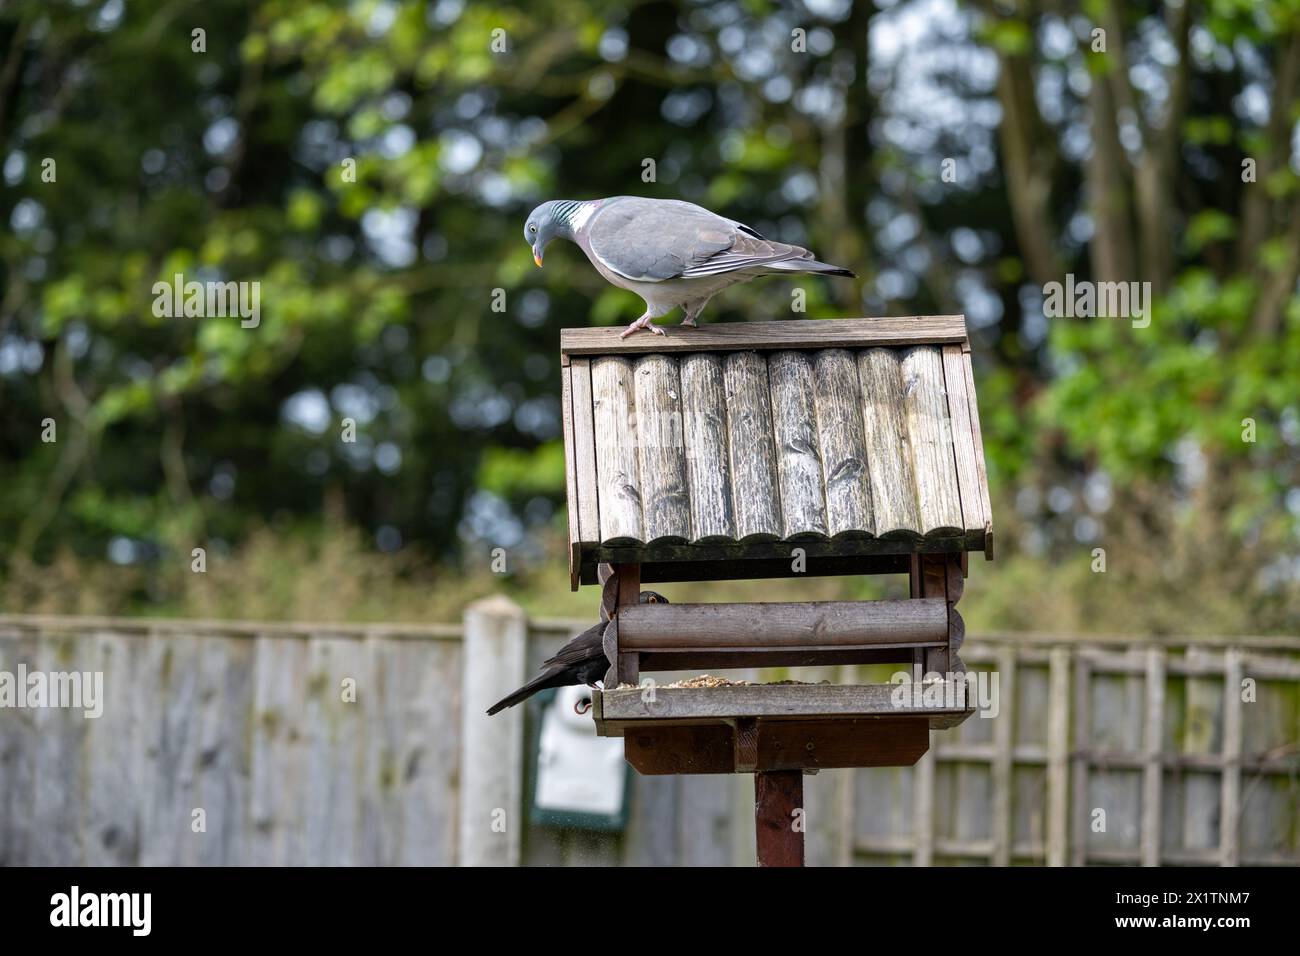 Un piccione di legno si trova in cima ad un tavolo di uccelli in un giardino suburbano in primavera, guardando in basso un uccello nero che mangia sul tavolo degli uccelli sottostante. Foto Stock